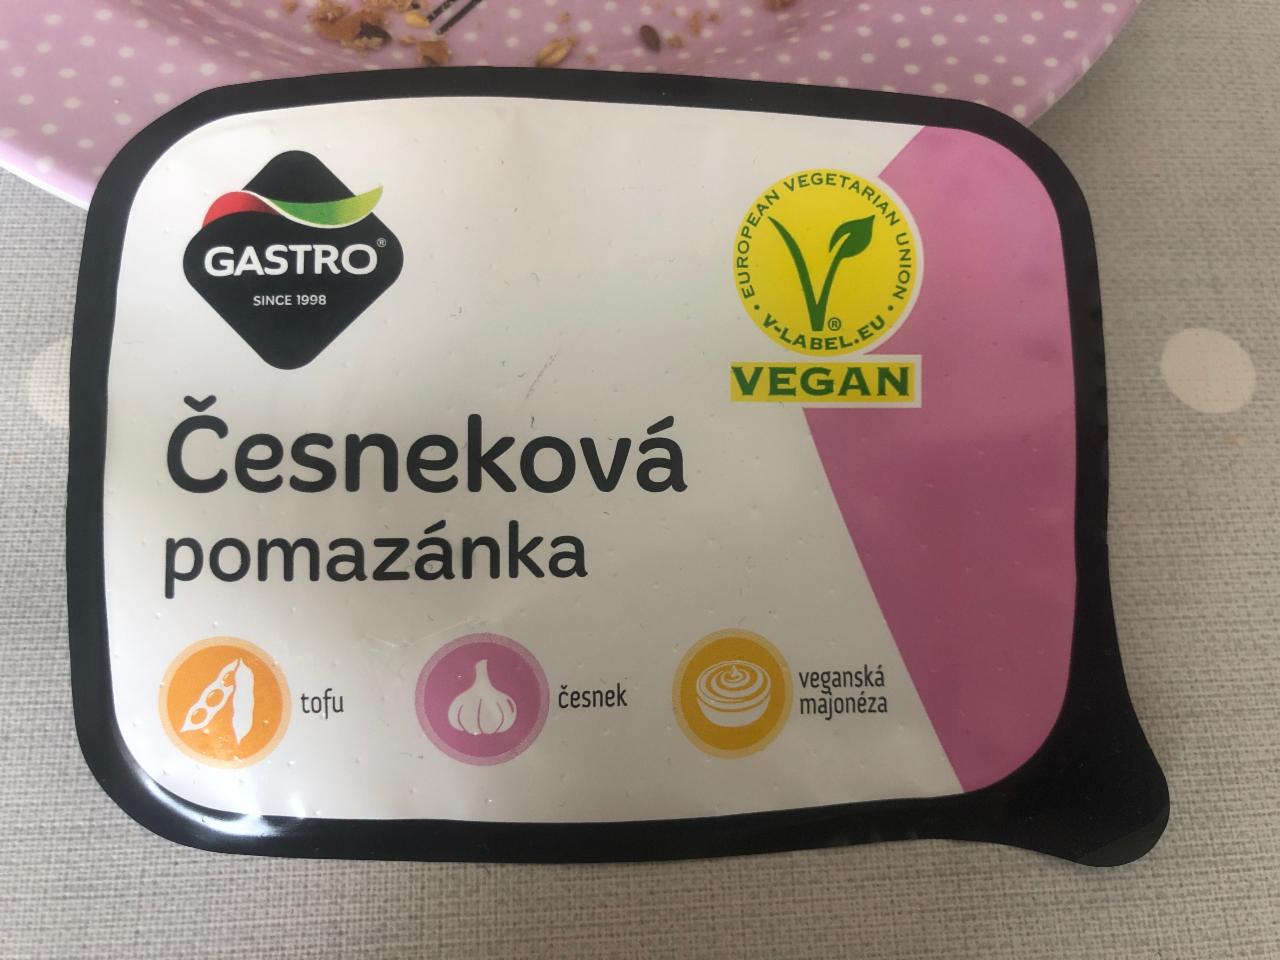 Fotografie - cesnaková nátierka vegan Gastro